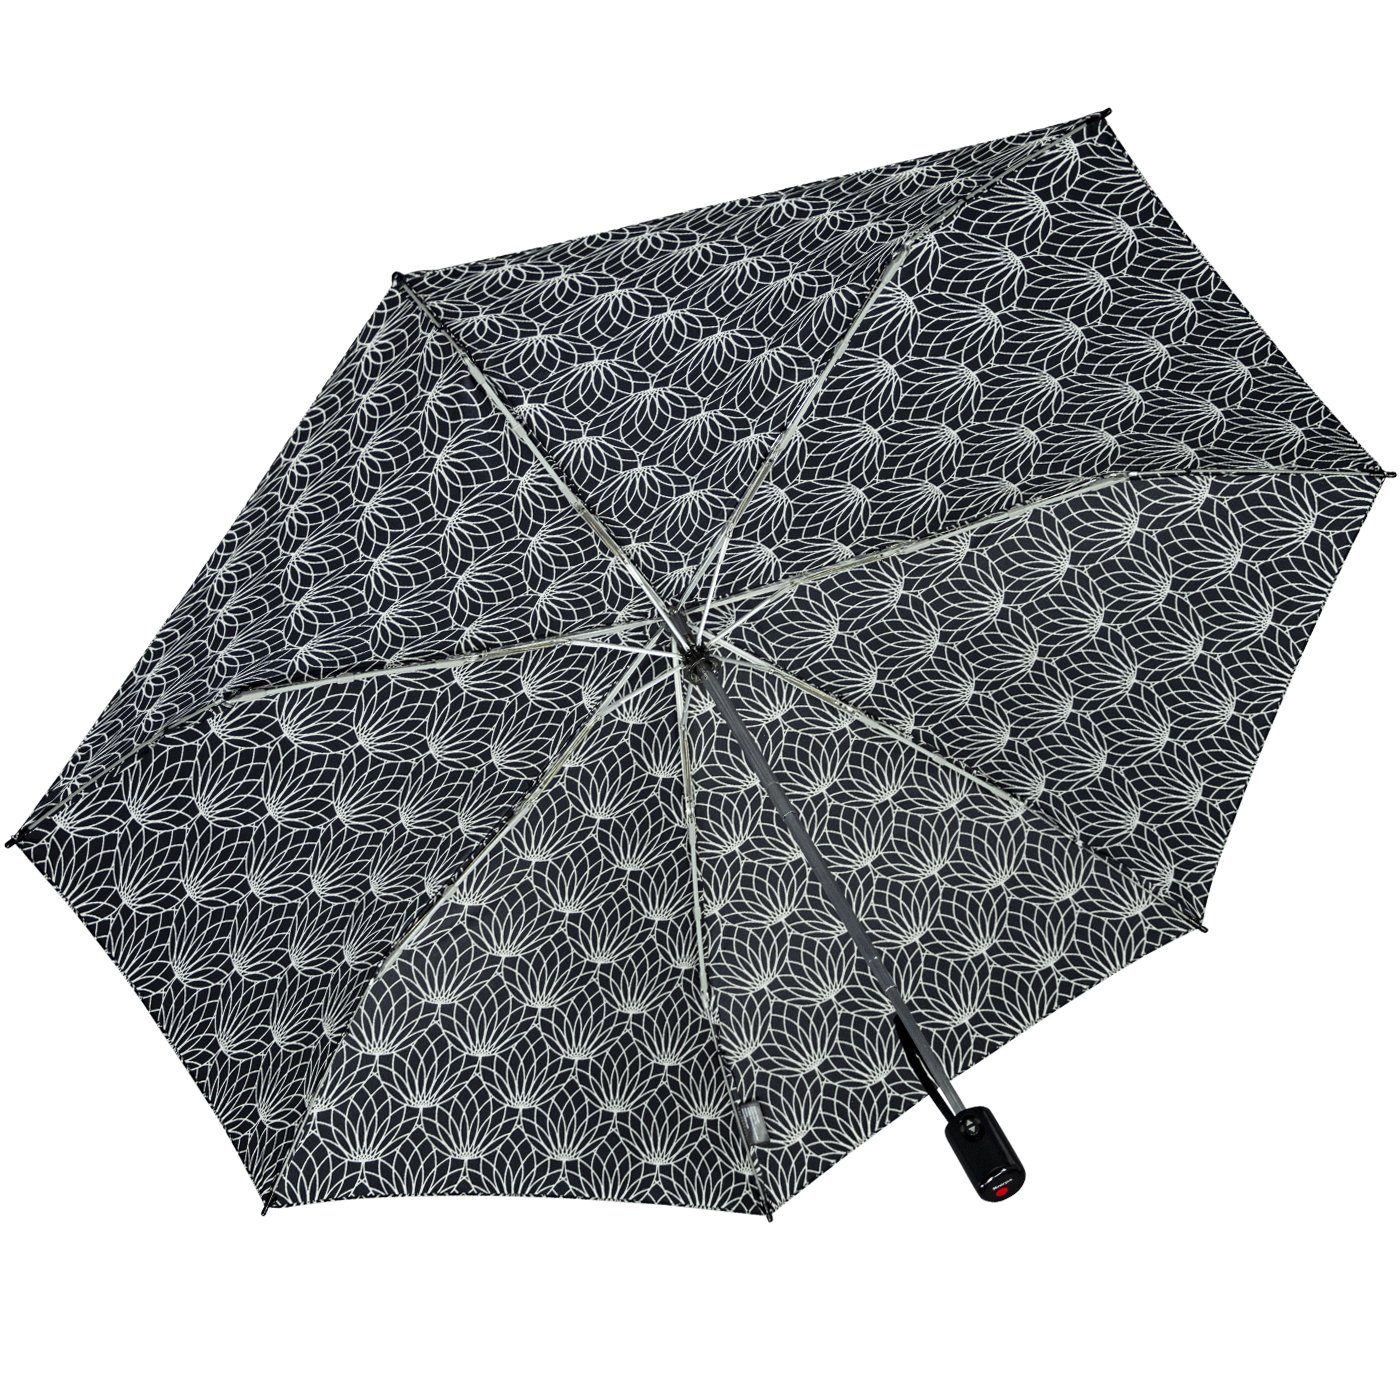 mit black UV-Schutz - Renature Auf-Zu-Automatik, Linien Taschenregenschirm Knirps® Schirm mit schwarz-weiß leichter, kompakter